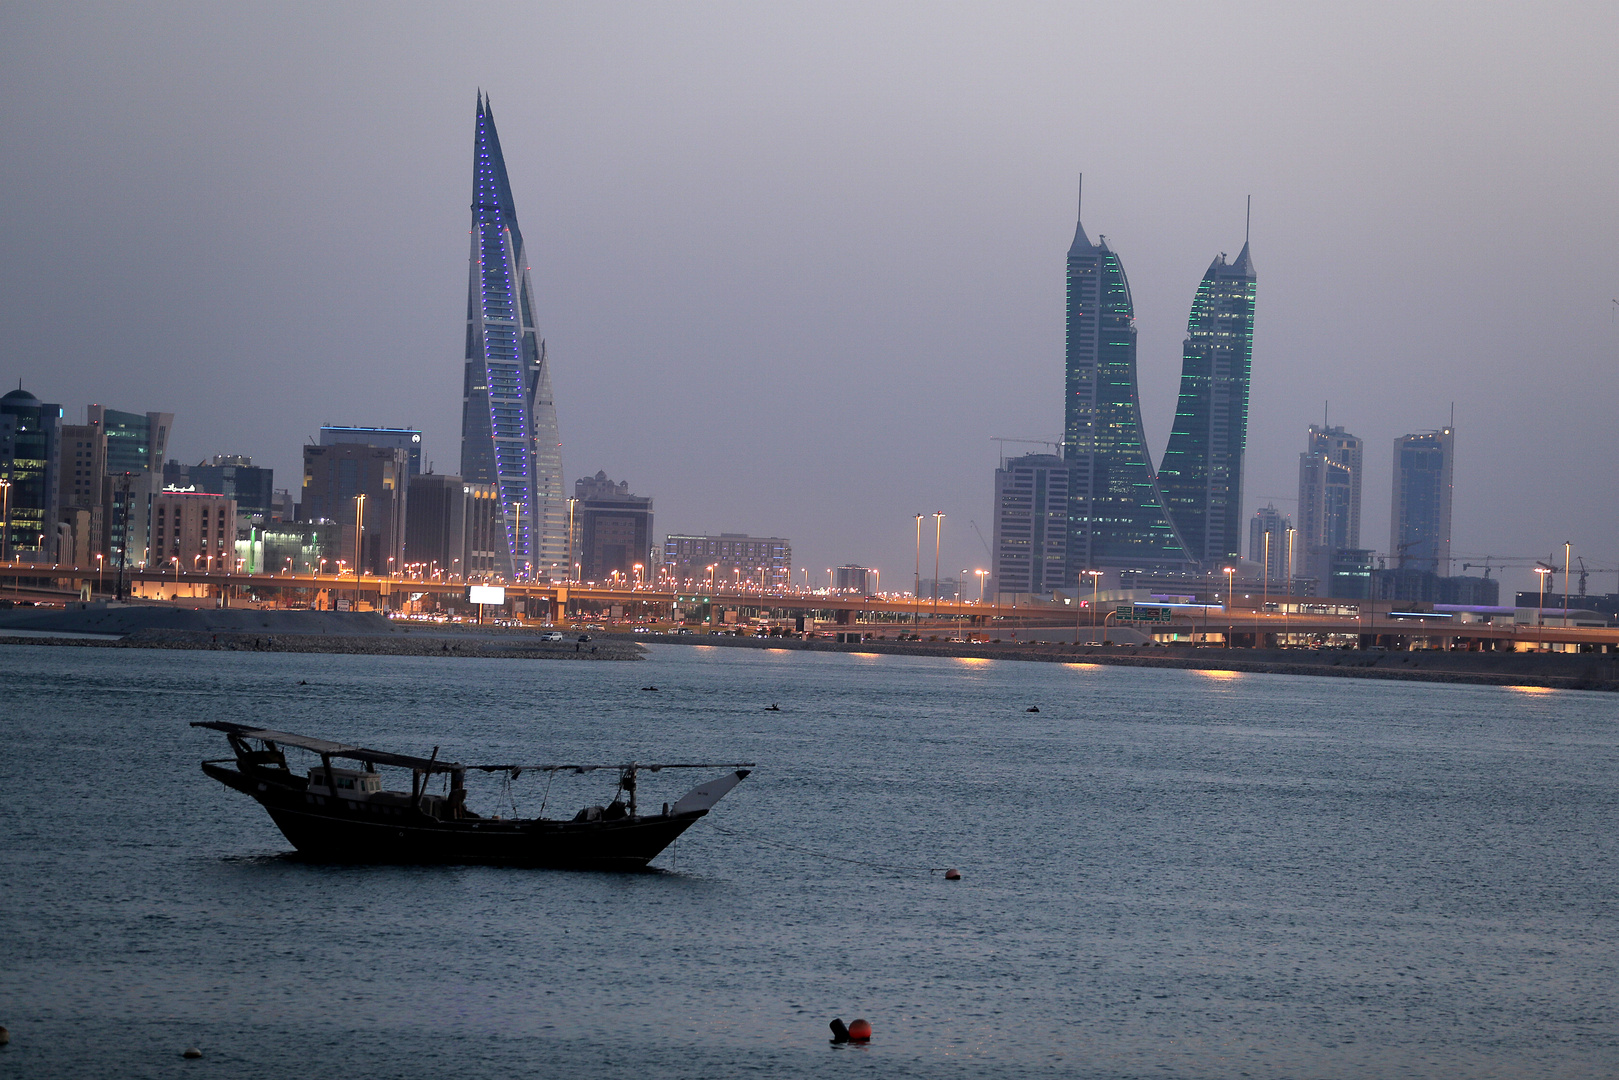 البحرين تستنكر تصريحات وزير الدفاع التركي تجاه الإمارات